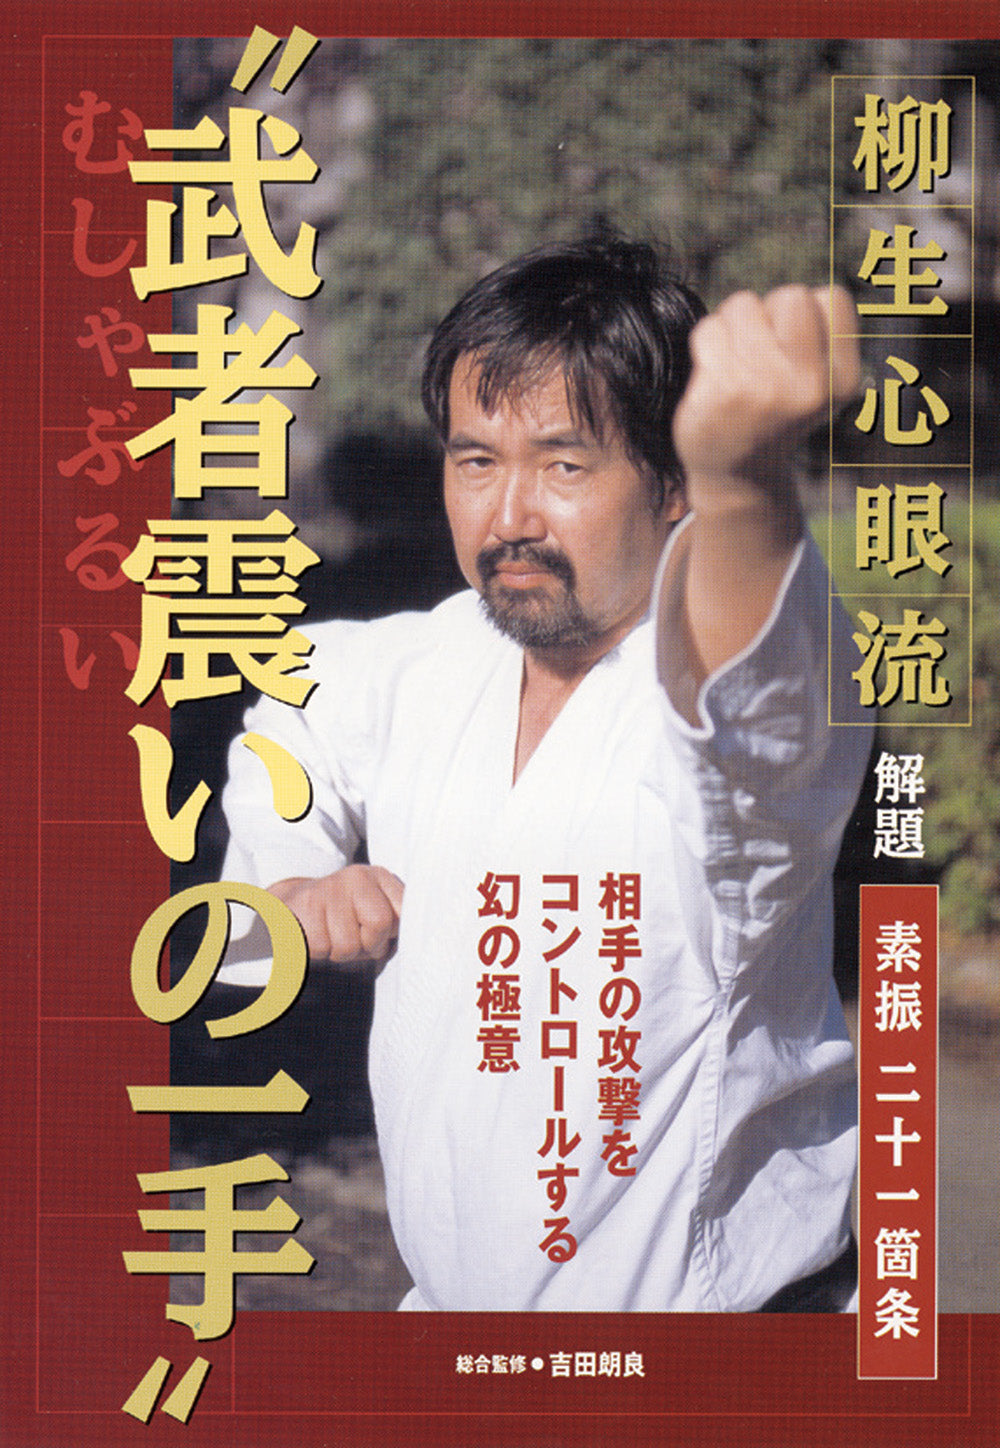 Yagyu Shingan Ryu Taijutsu DVD with Akira Yoshida